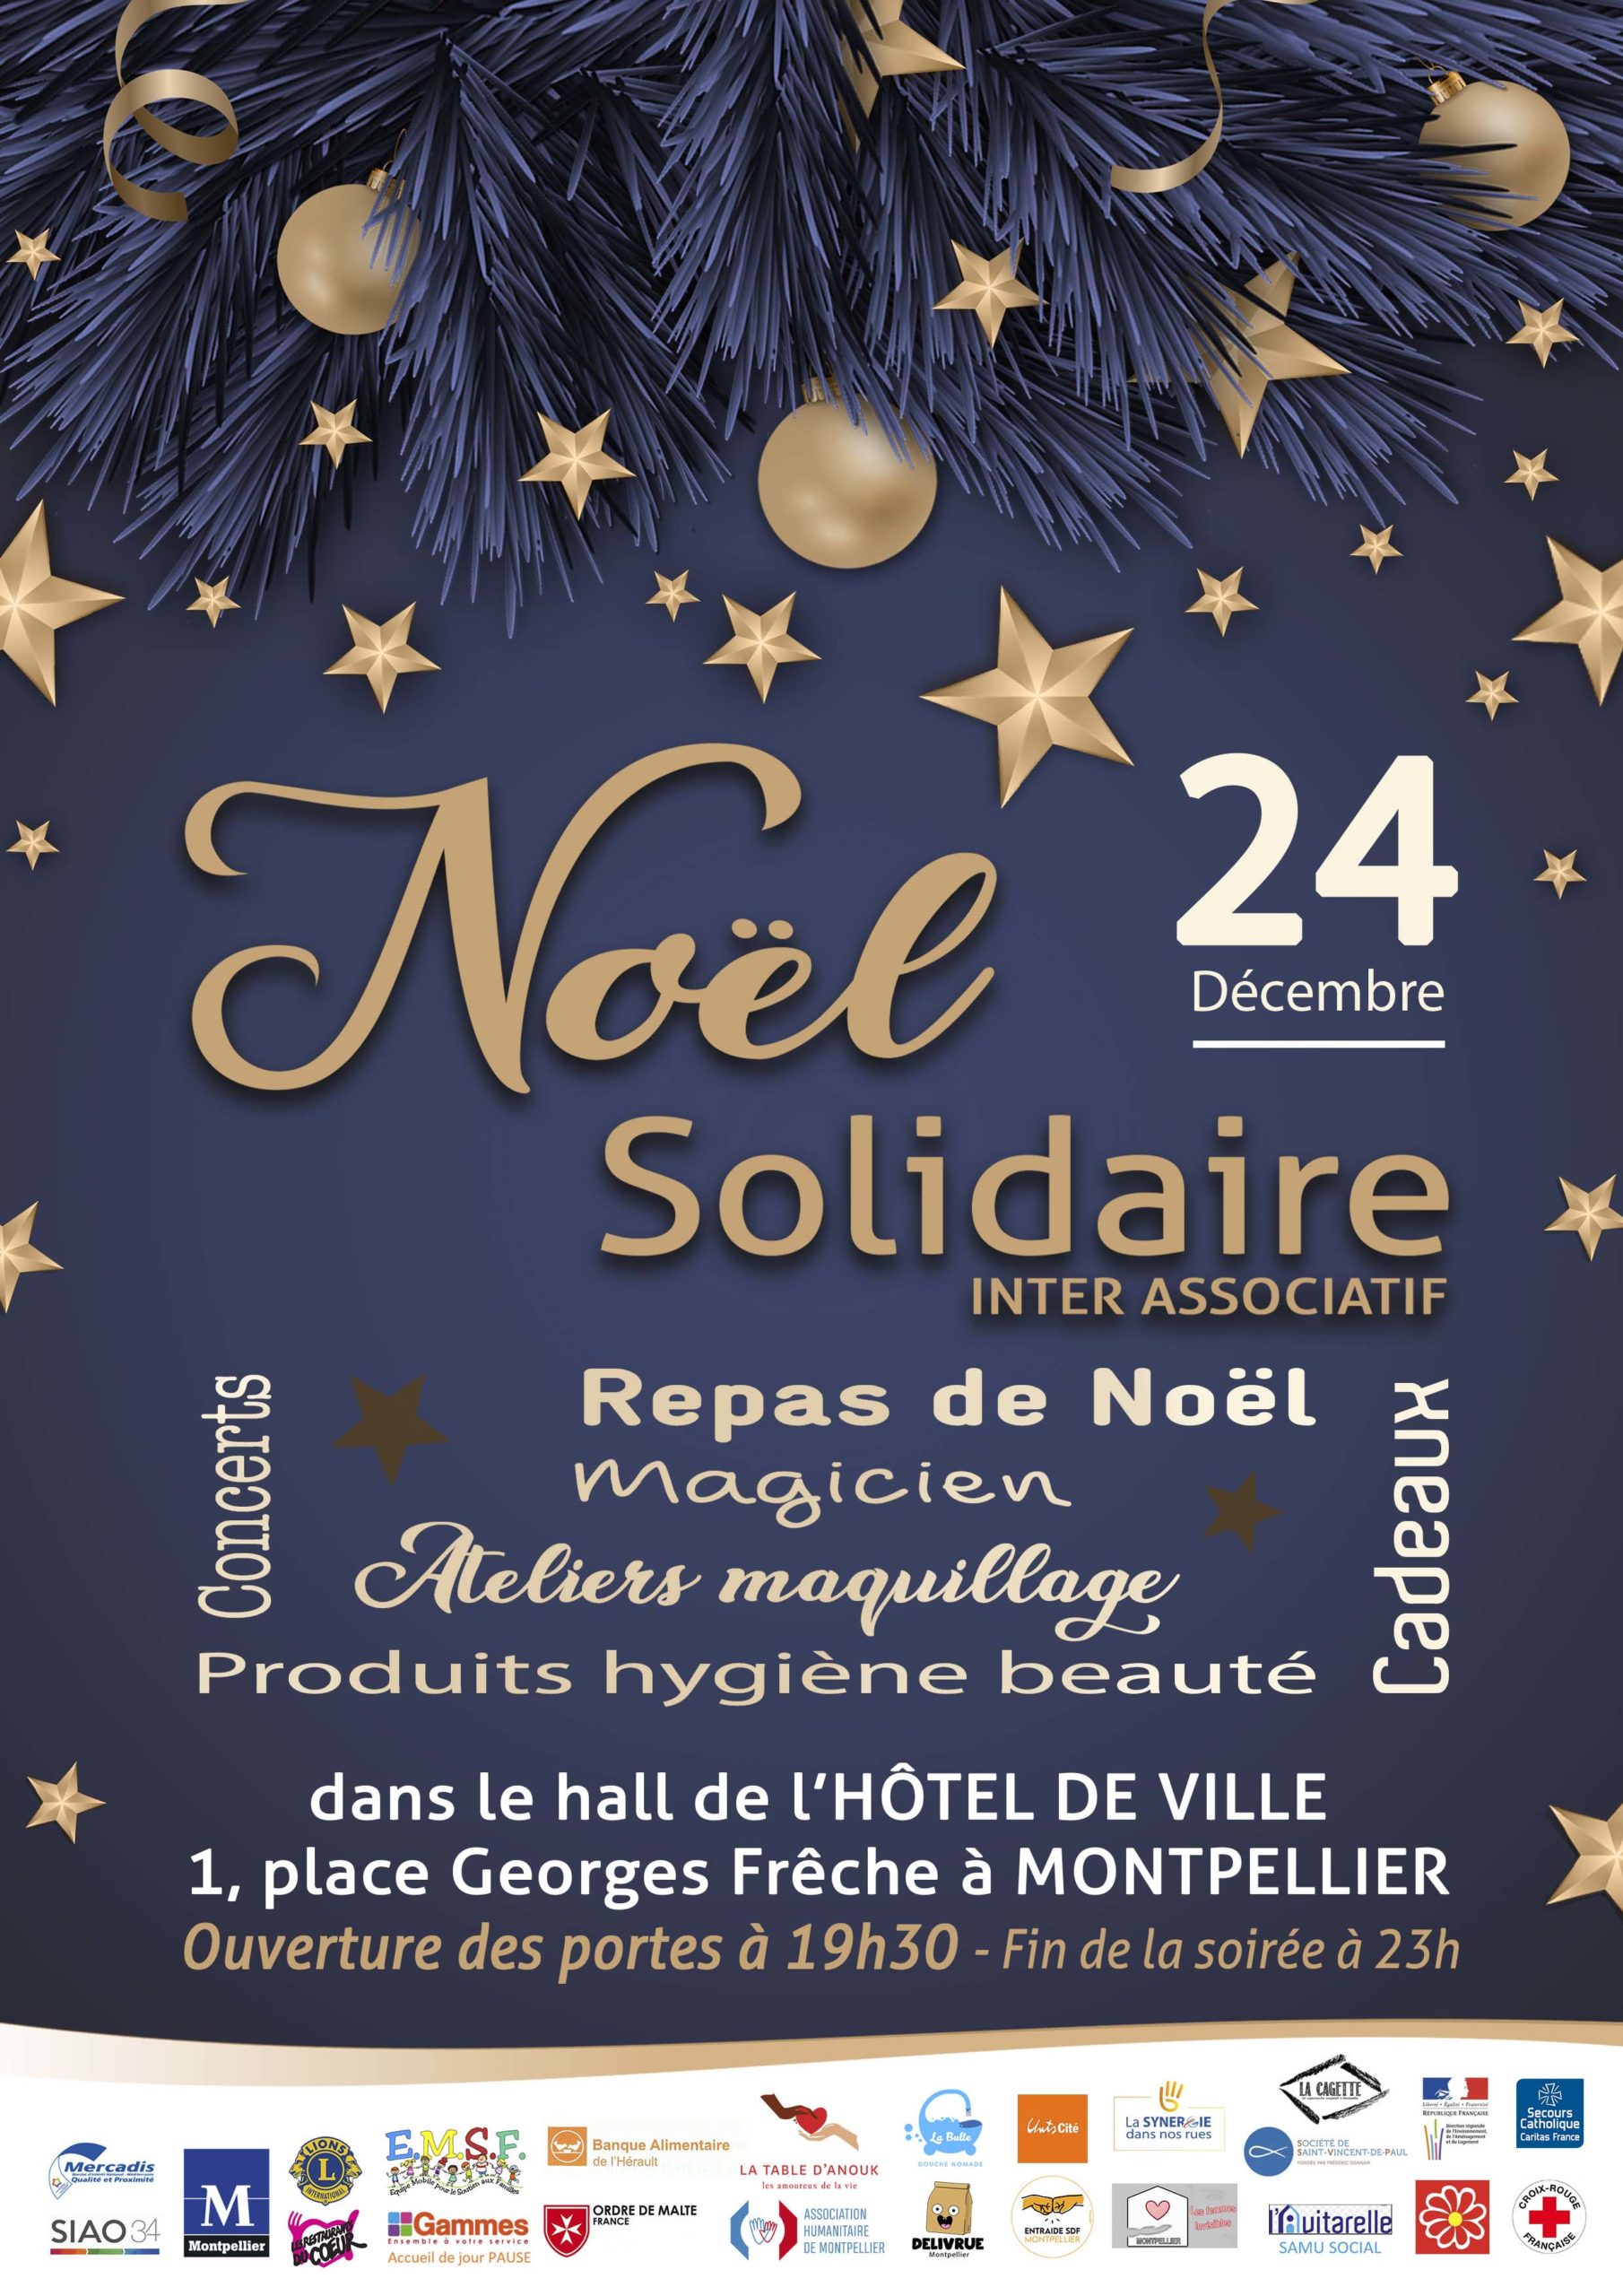 « Noël Solidaire » : un repas organisé le 24 décembre à l’Hôtel de Ville pour les plus démunis